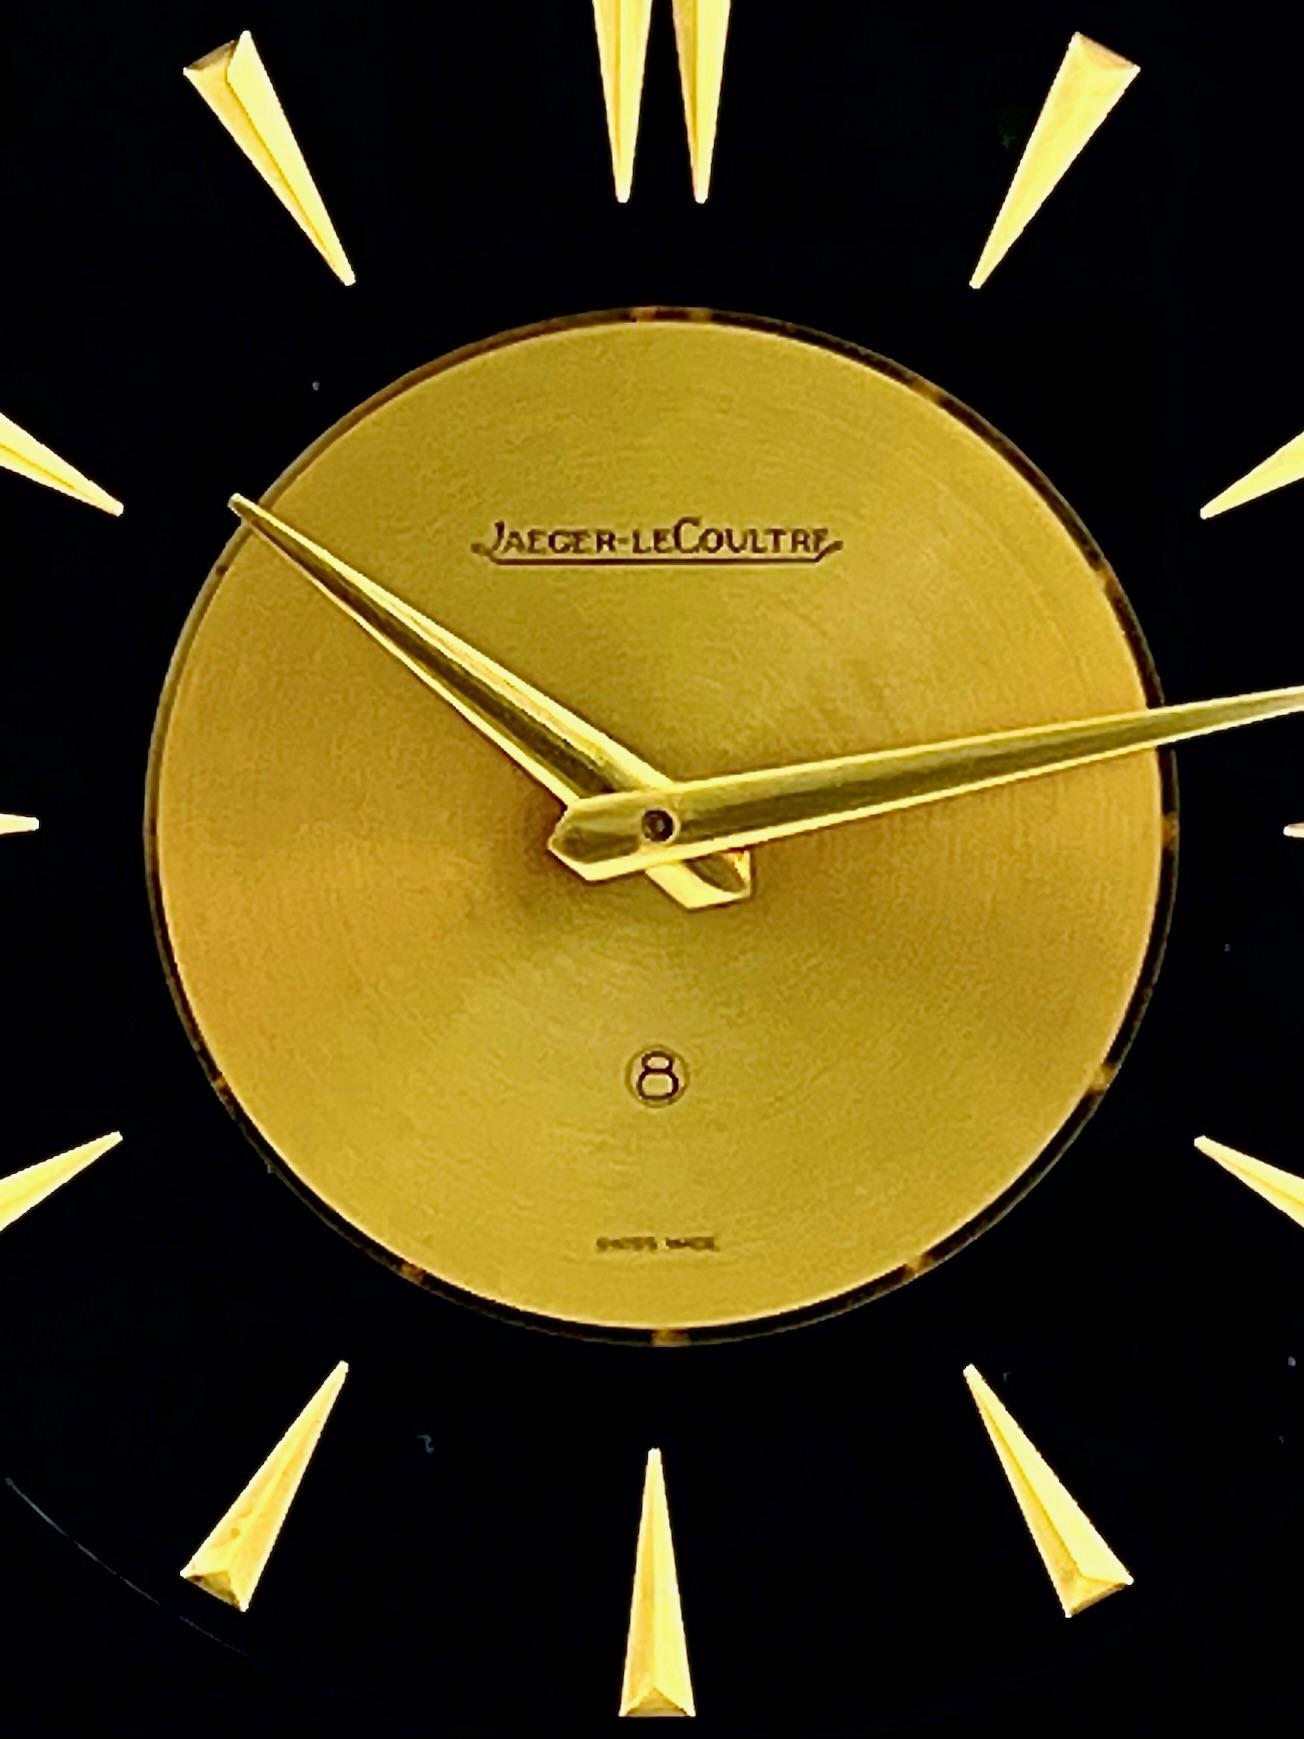 Magnifique horloge Marina de Jaeger LeCoultre mi-siècle avec un design naturaliste détaillé.

Avec un boîtier en laiton doré poli et lucite sur fond noir, cette horloge est magnifiquement décorée d'une scène de la nature représentant un libellule,